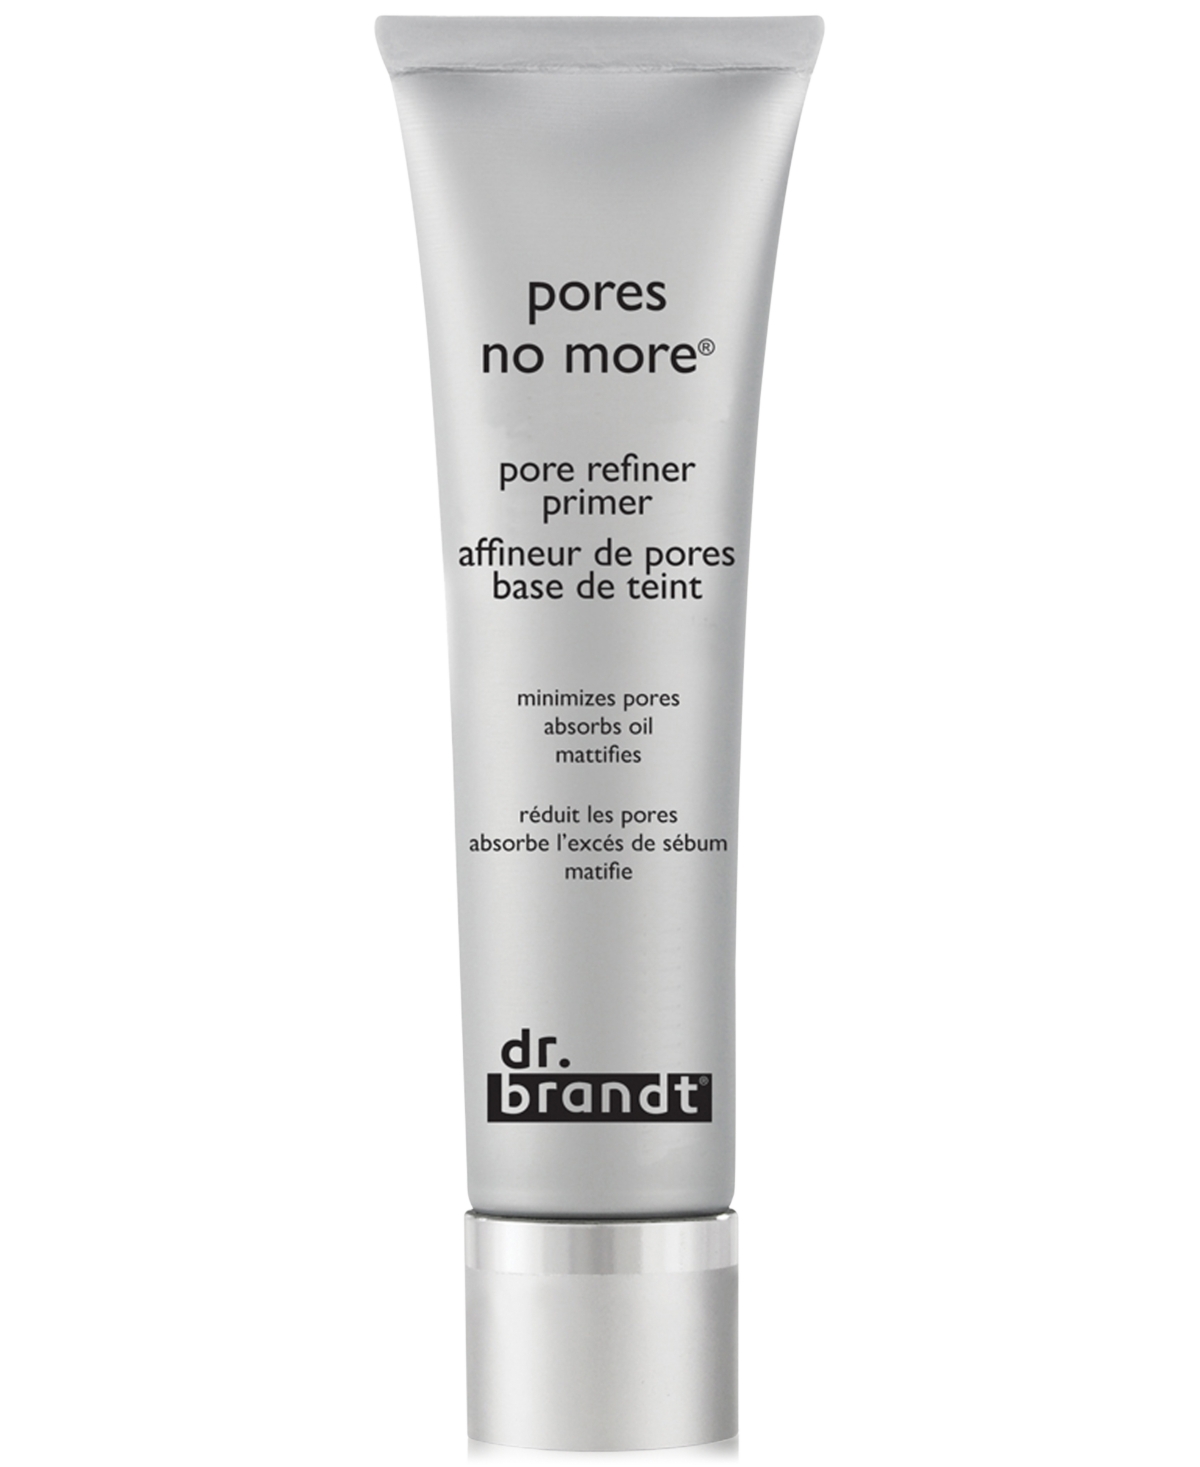 dr. brandt Pores No More Pore Refiner Primer (Travel Size), 0.5 oz.